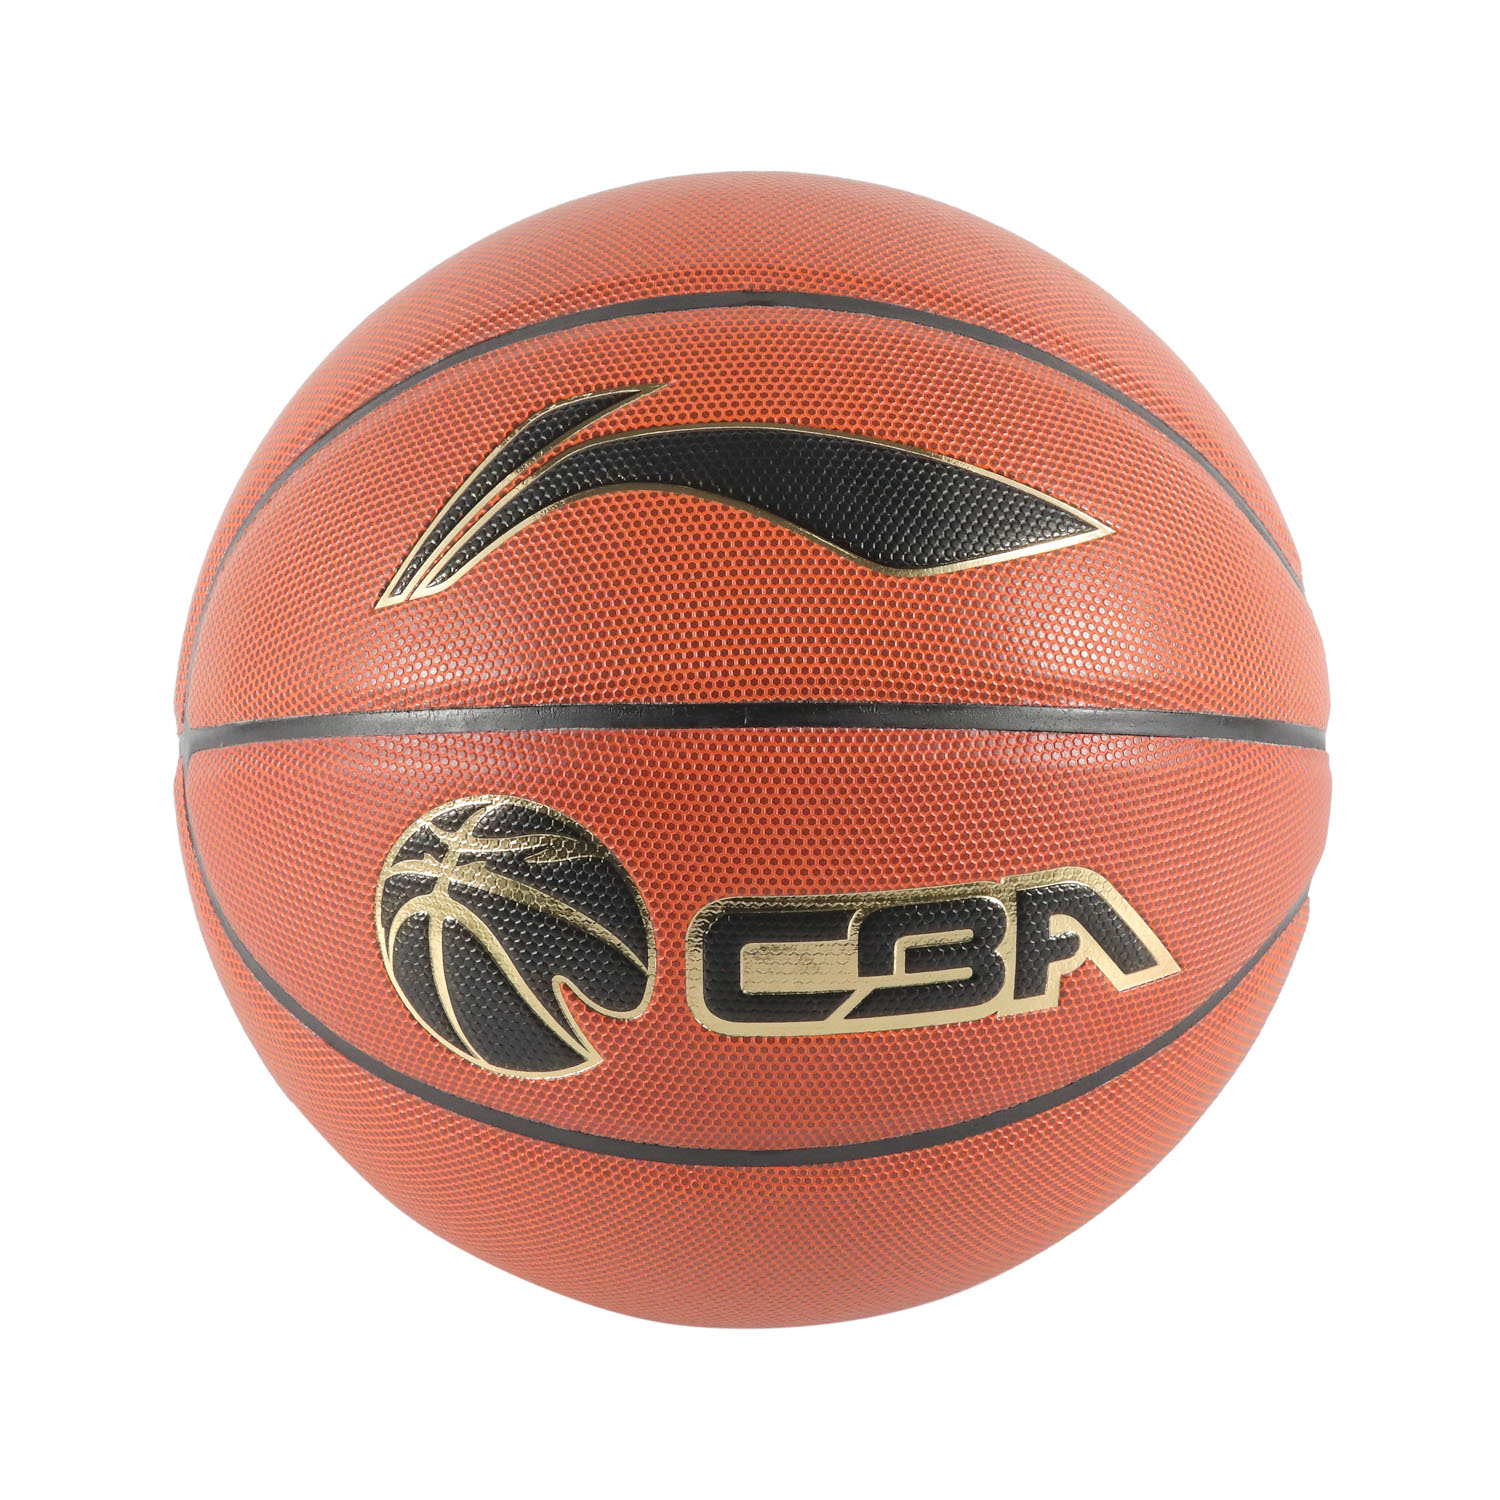 Personalize seu próprio logotipo bola de basquete de microfibra de alta qualidade